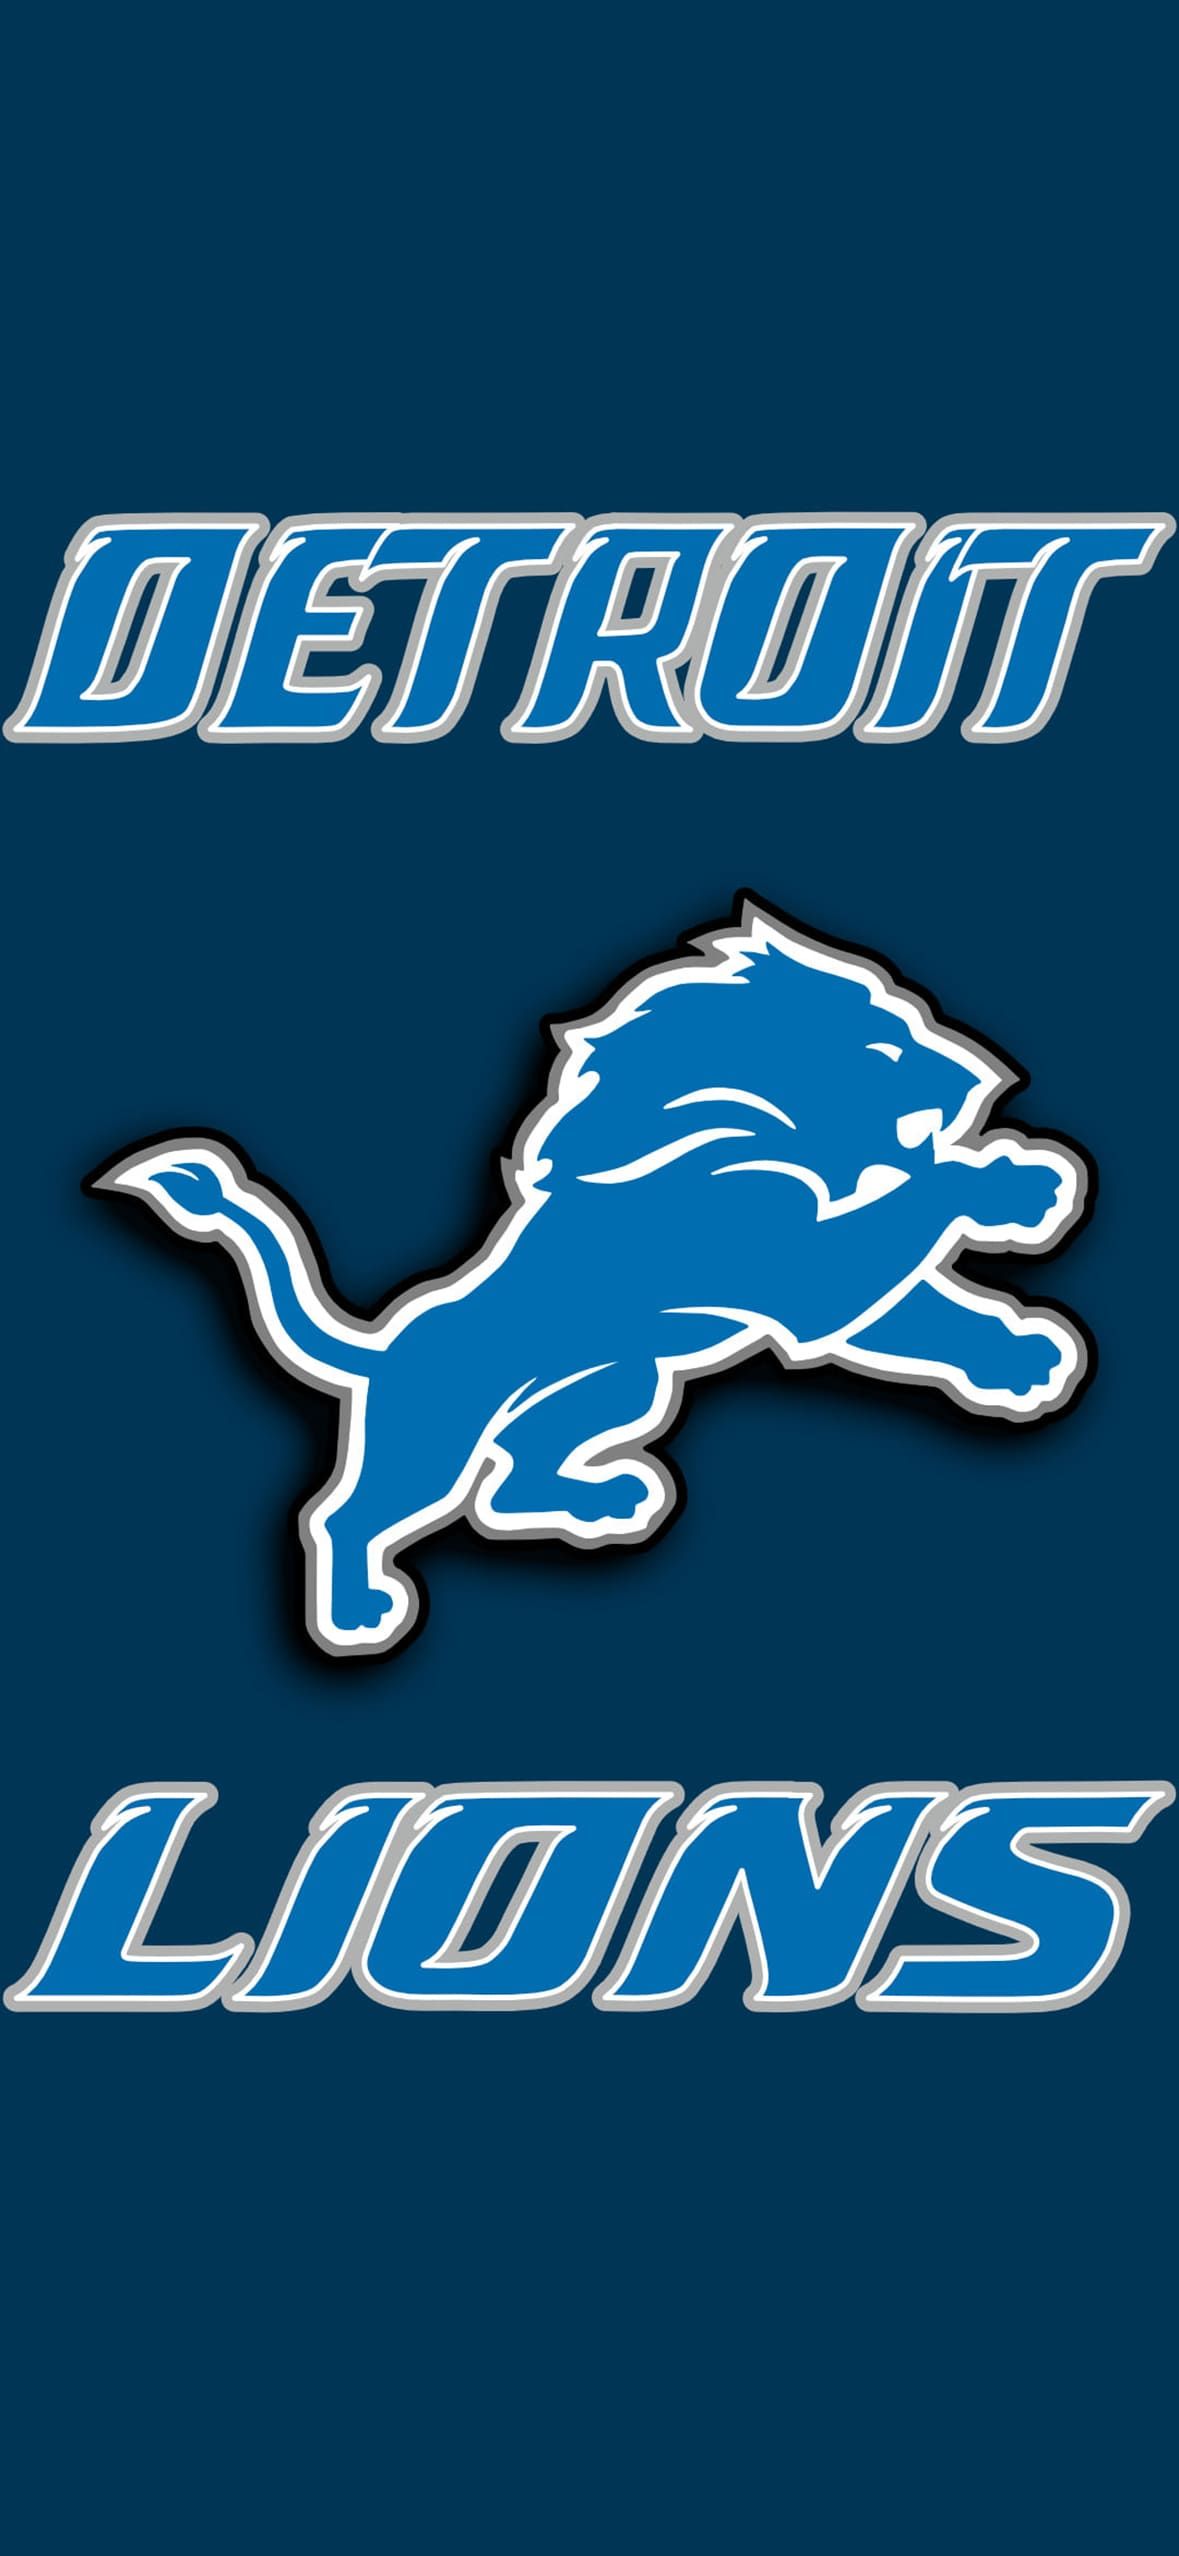 Detroit lions wallpaper, Detroit lions